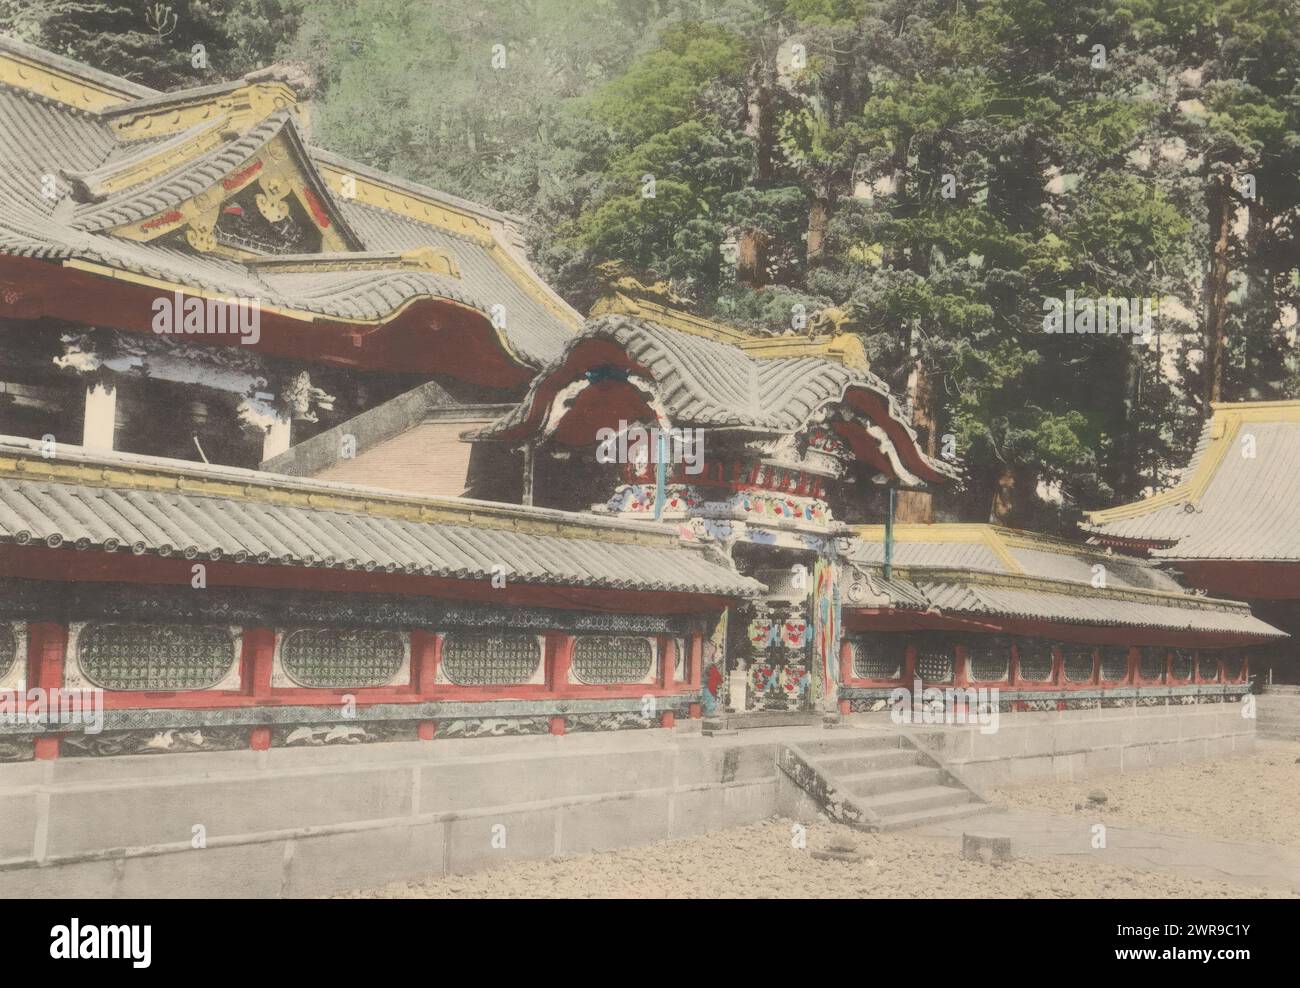 Vue d'un karamon au Nikko Toshogu à Nikko, la porte Karamon et le temple Ieyasu, à Nikko (titre sur l'objet), fabricant : Kōzaburō Tamamura, (éventuellement), Nikko, c. 1895 - c. 1905, papier, collotype, hauteur 105 mm × largeur 151 mm, impression photomécanique Banque D'Images